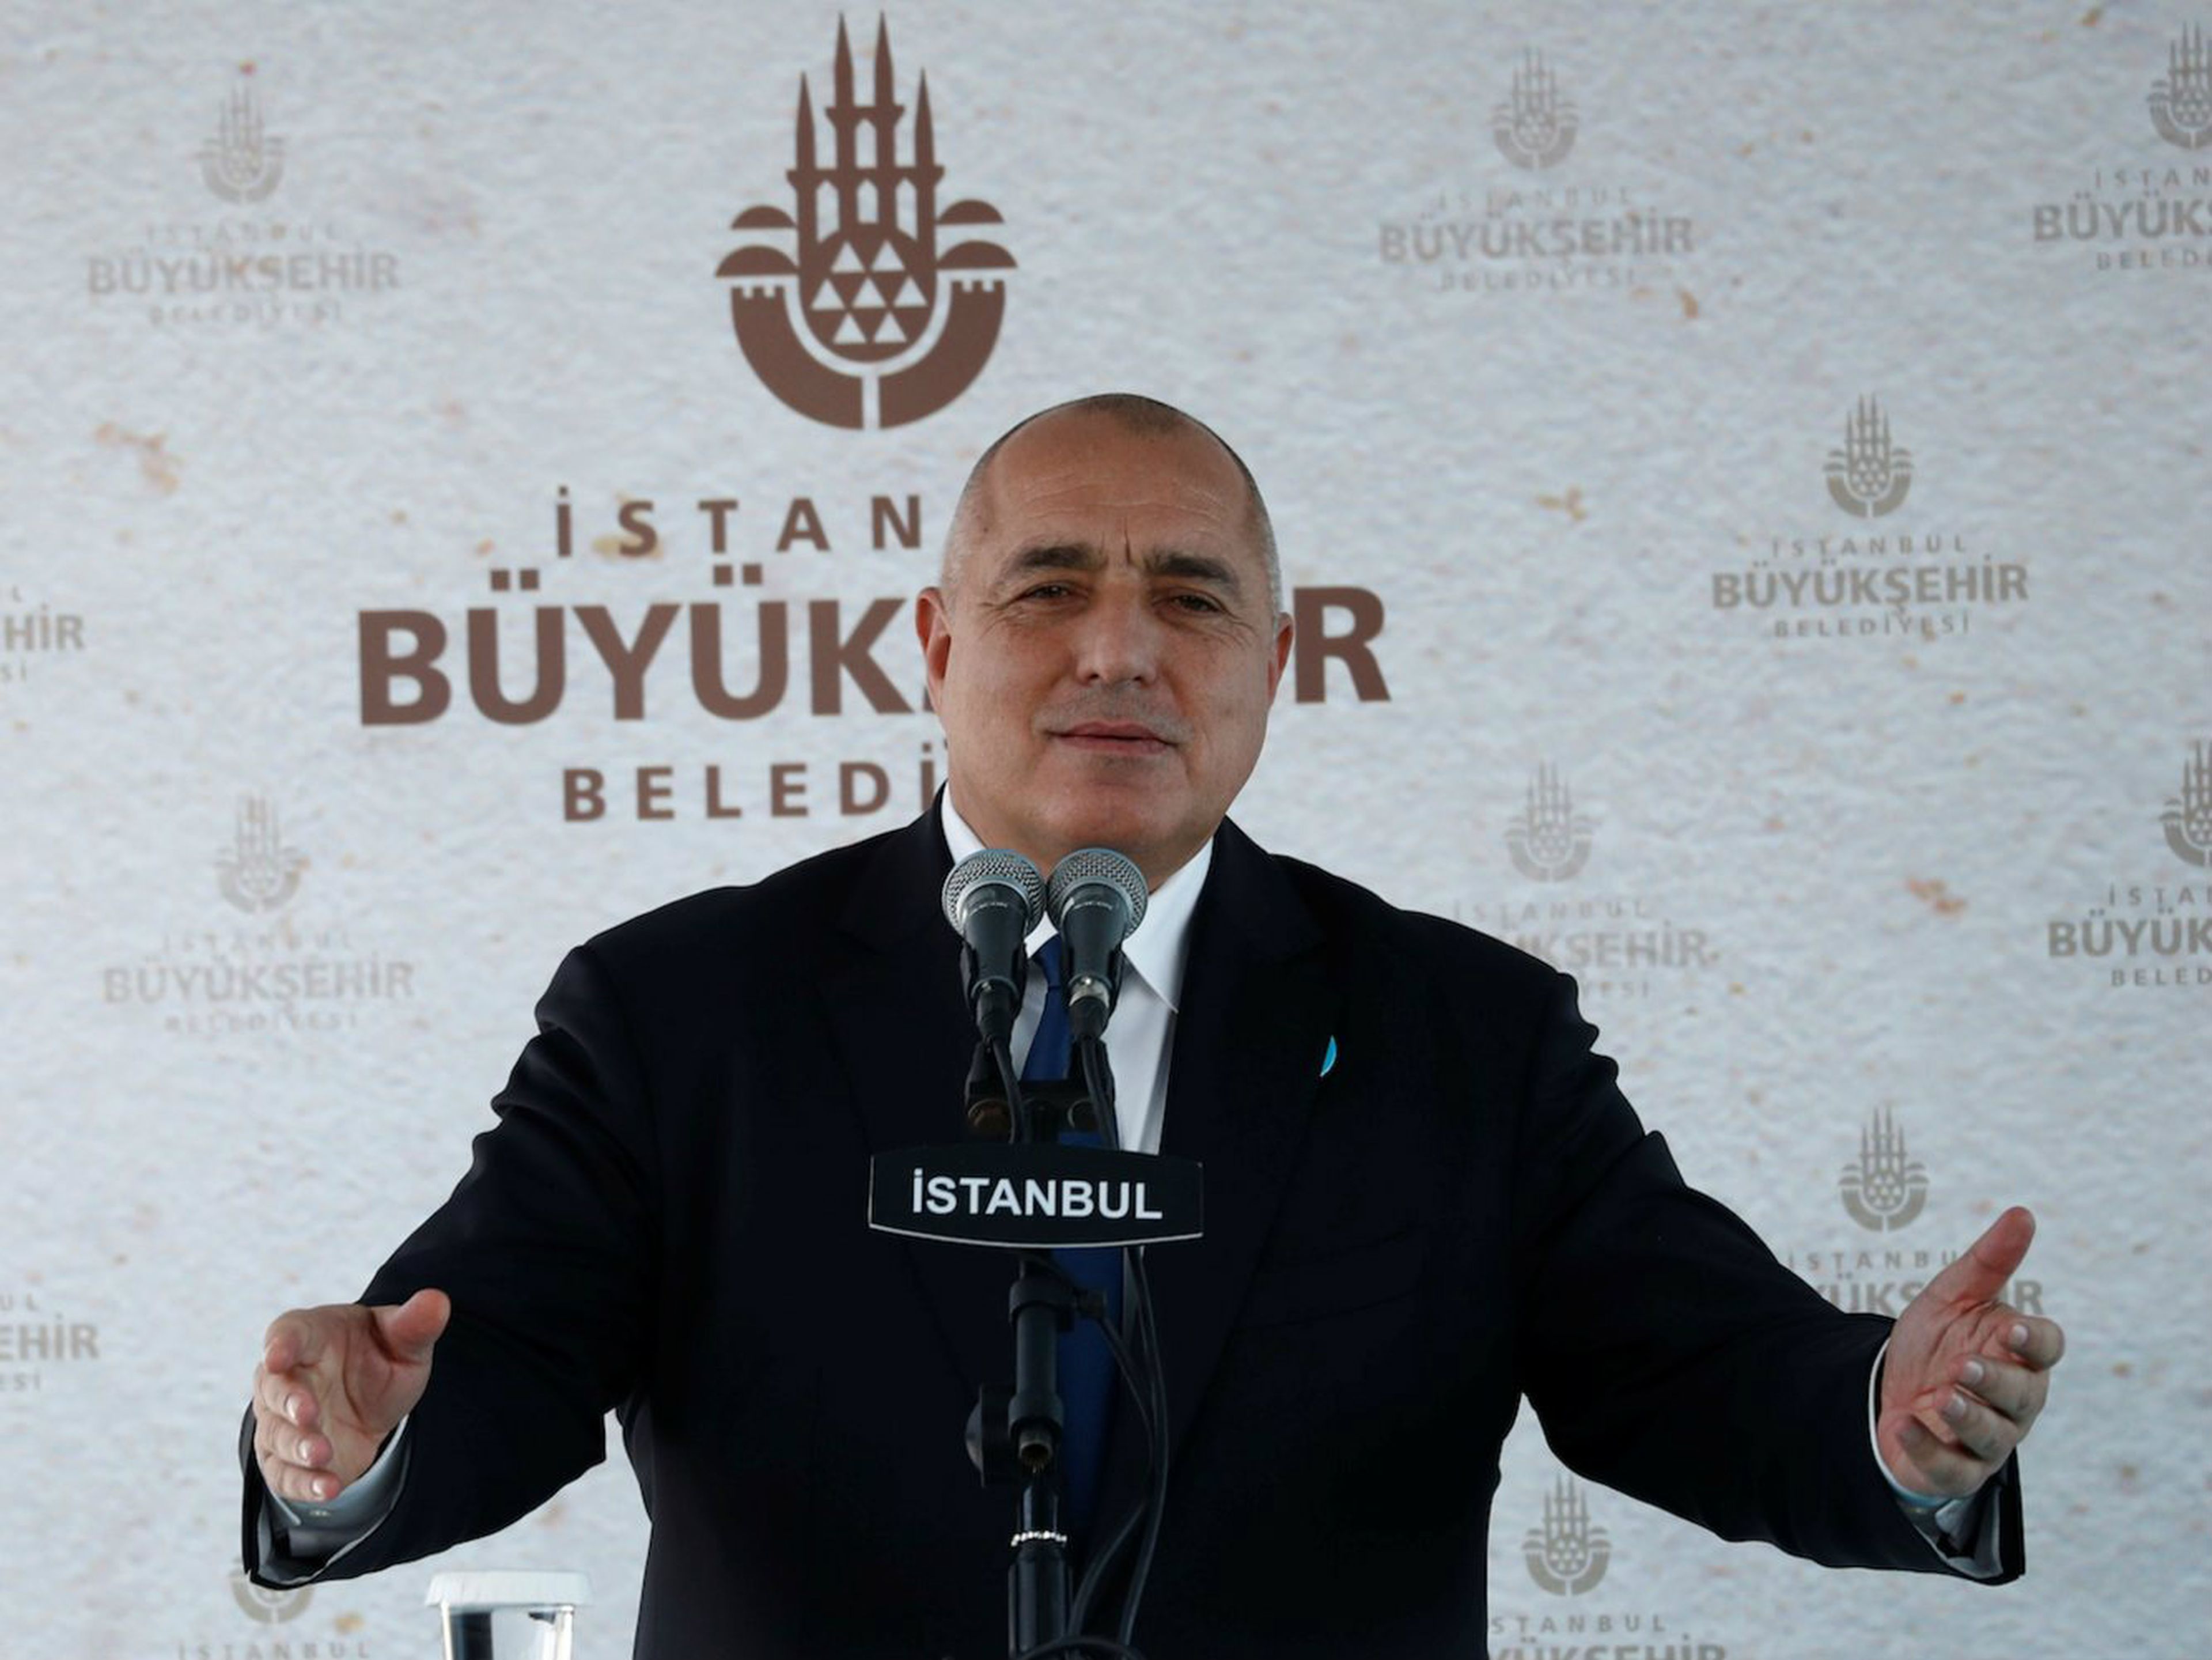 El primer ministro búlgaro, Boyko Borissov, pronuncia un discurso en Estambul el pasado enero de 2018.